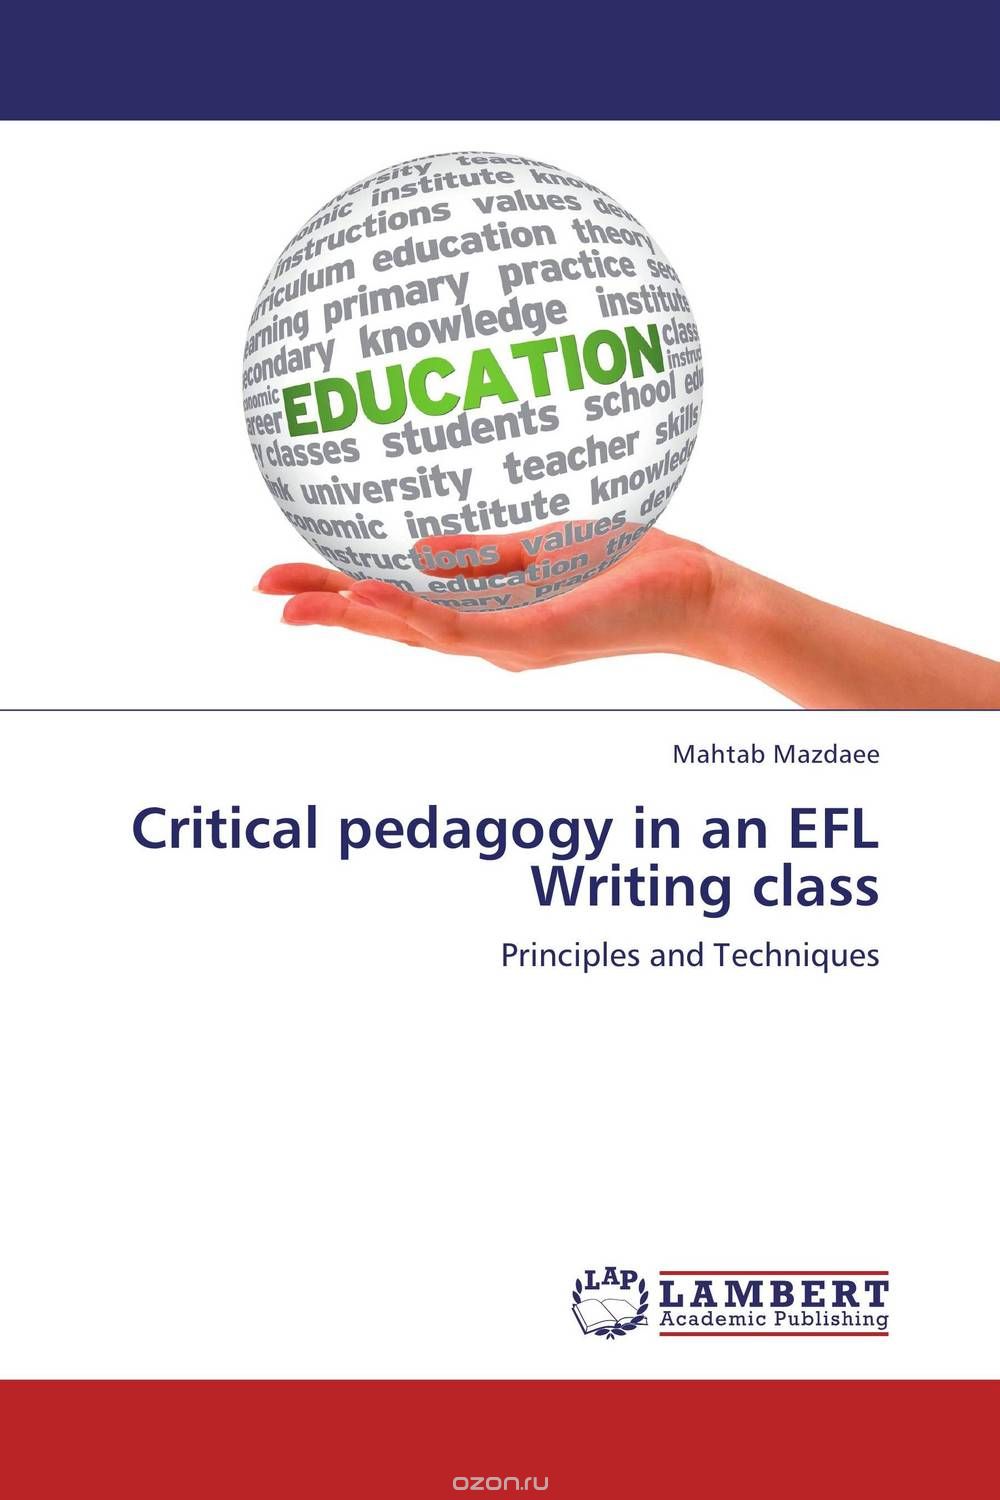 Скачать книгу "Critical pedagogy in an EFL Writing class"